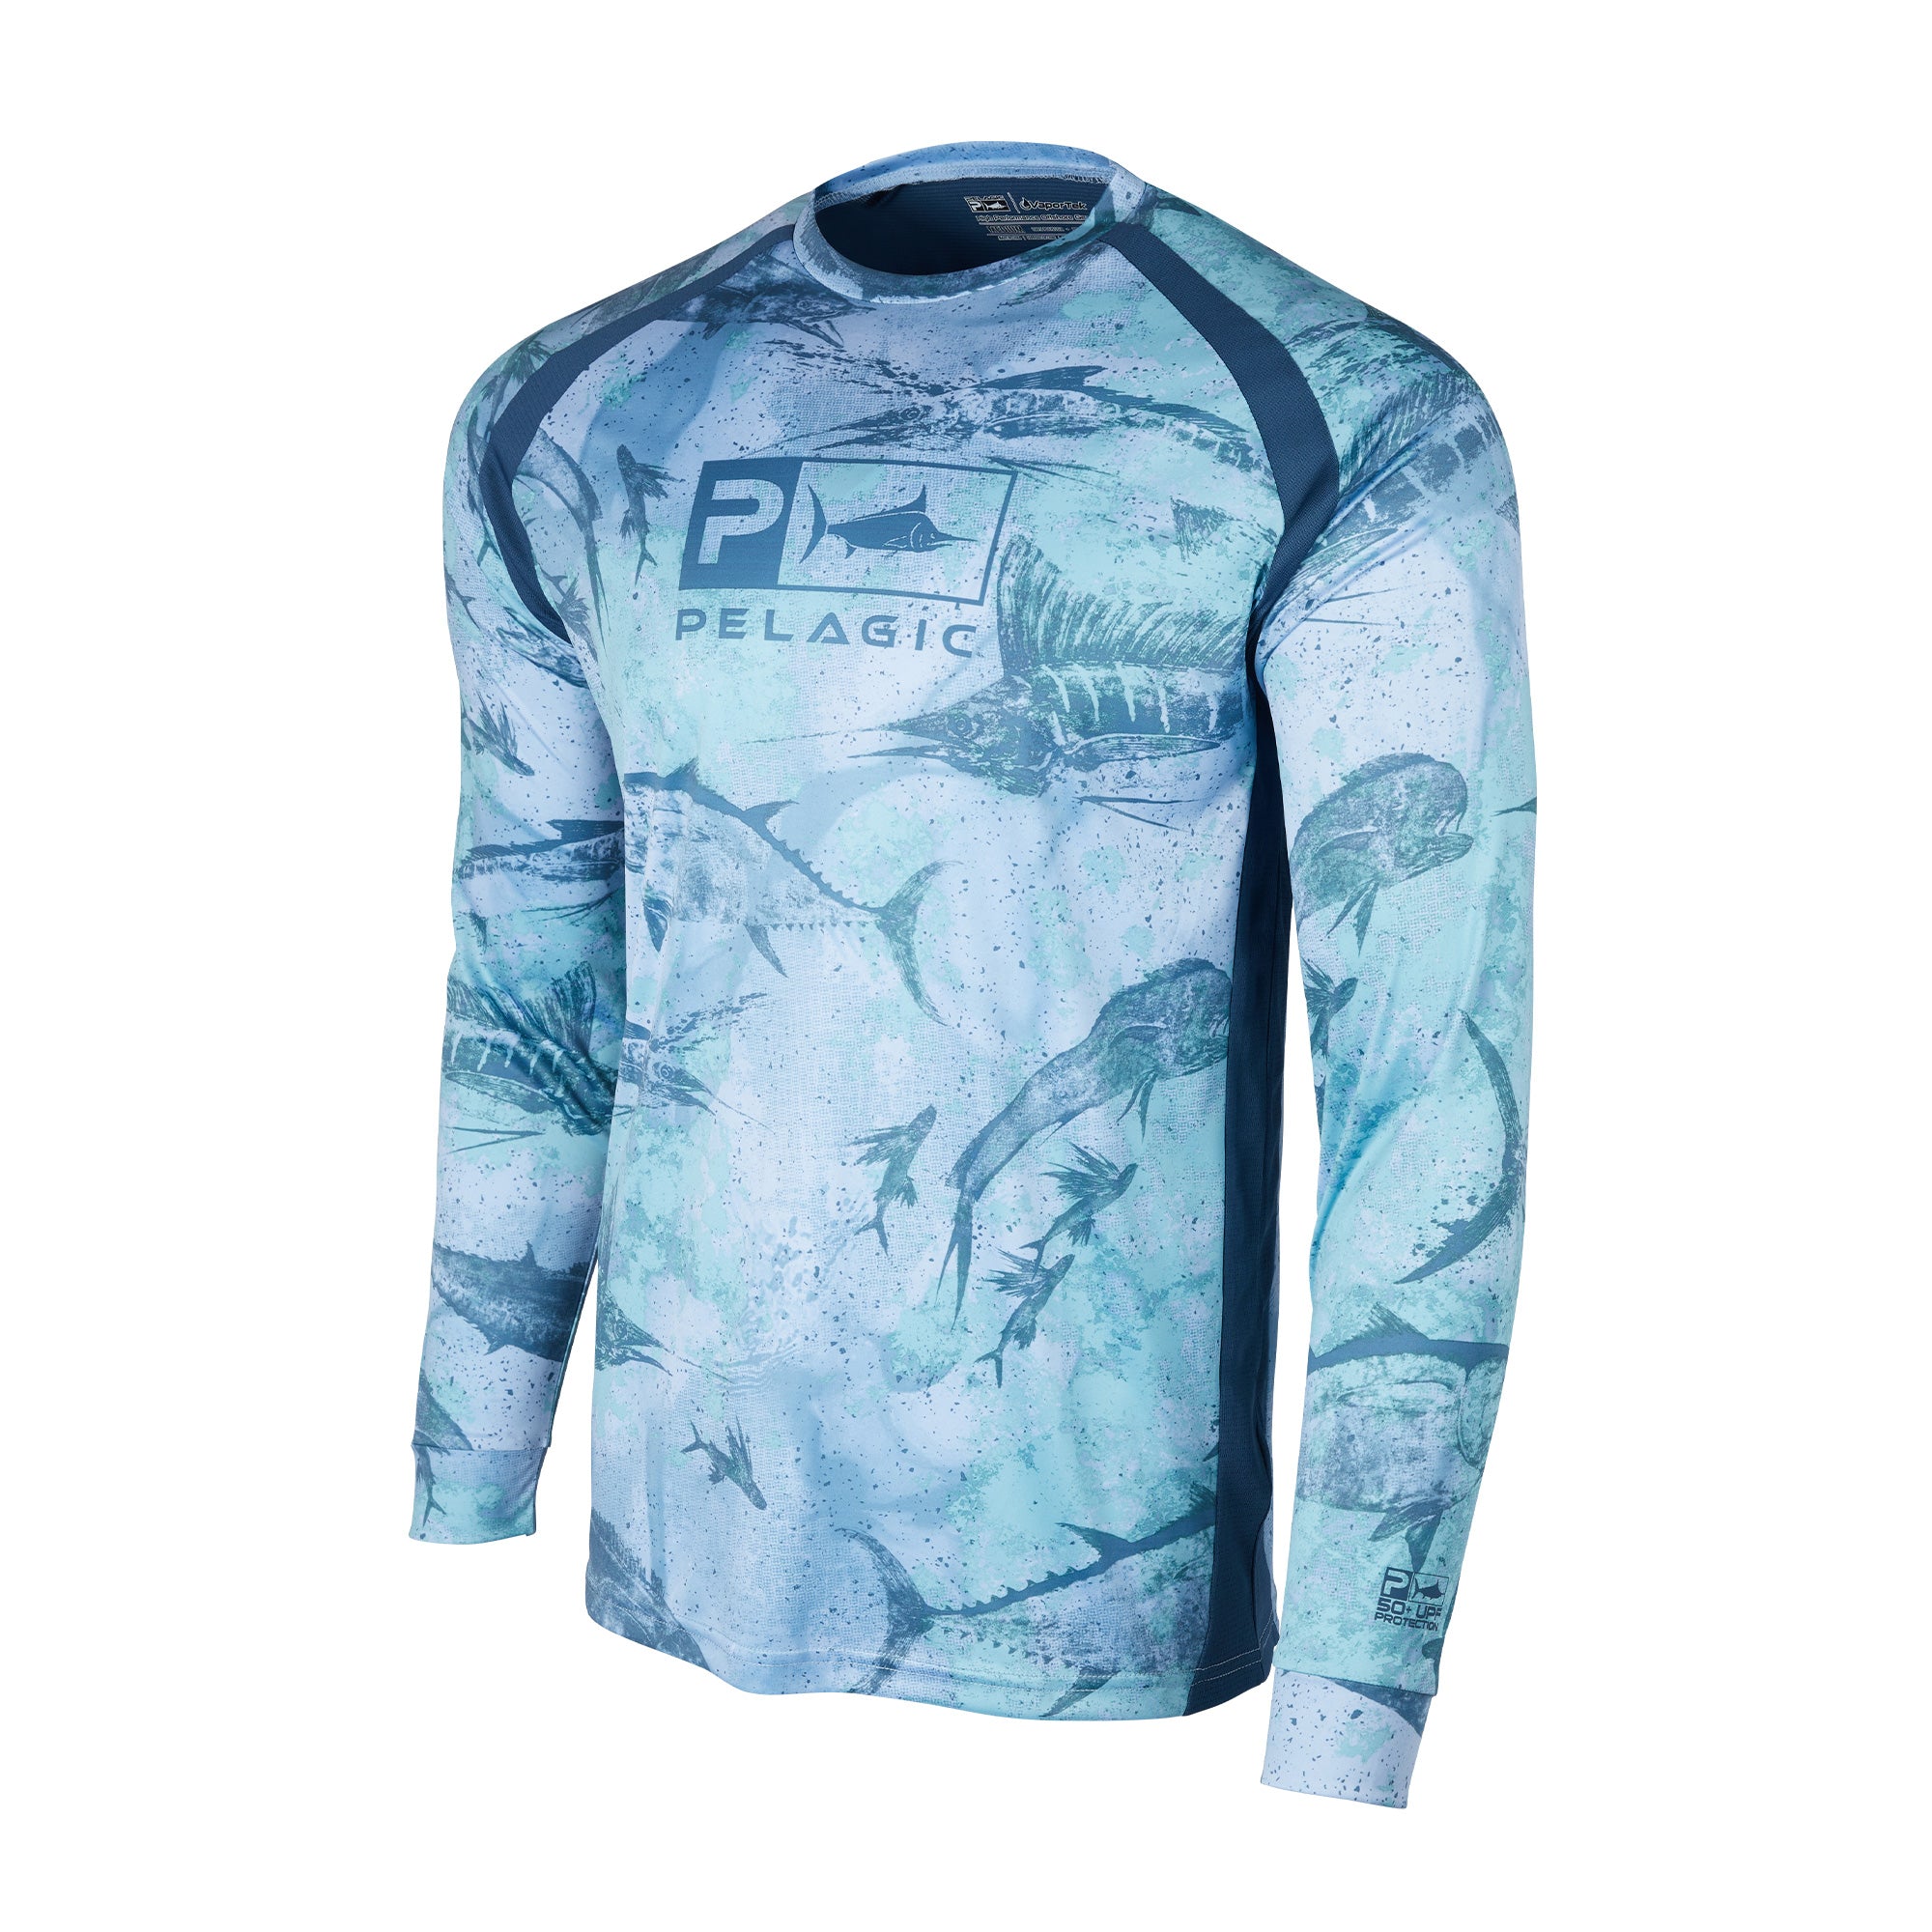 Pelagic Gear - Vaportek Let's Go Hooded Fishing Shirt - Light Grey